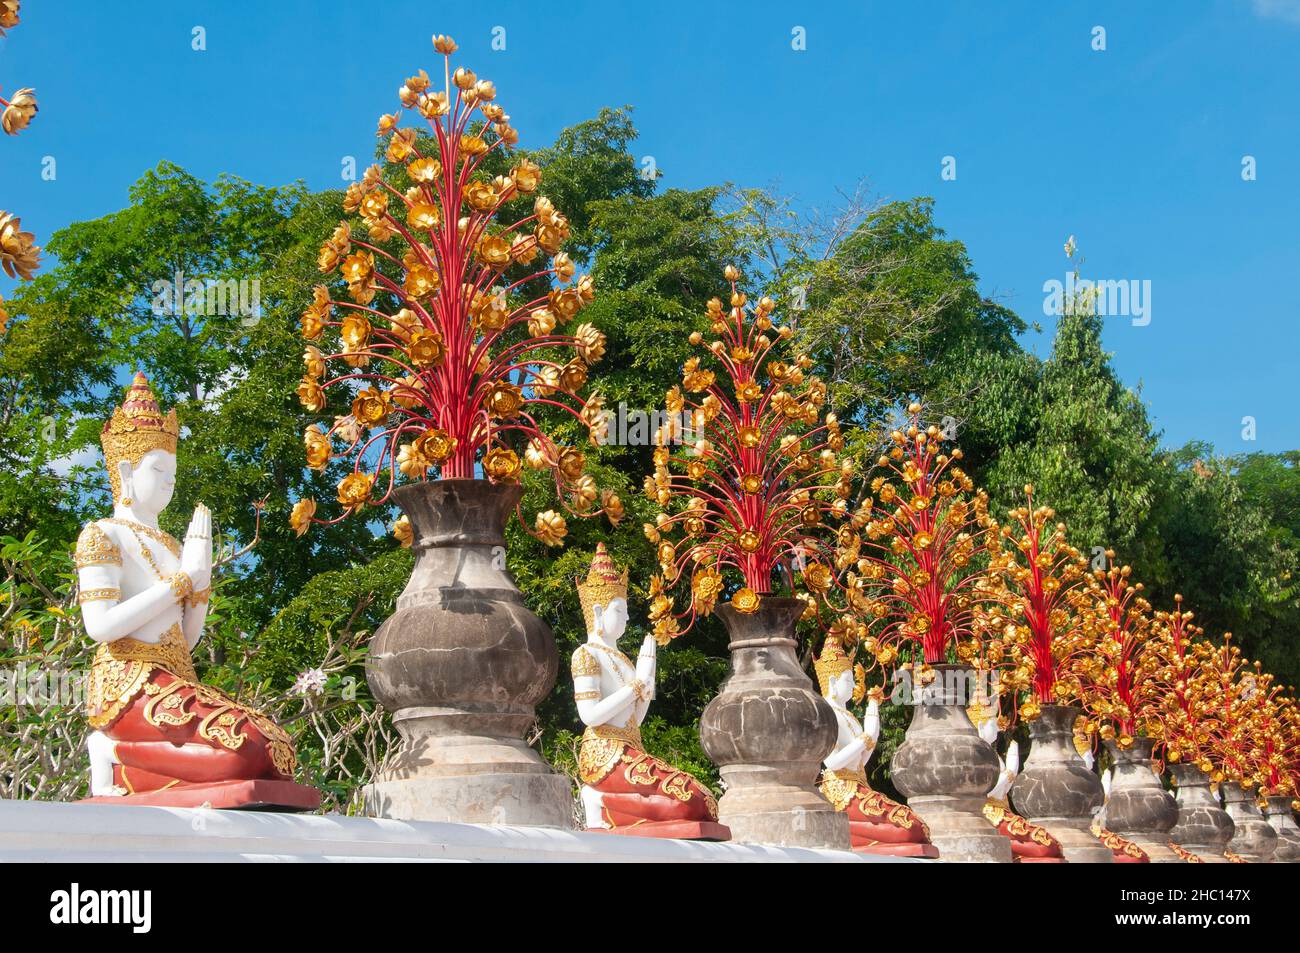 Tailandia: Wat Ban Den, Ban Inthain, distrito de Mae Taeng, Chiang Mai. Wat Ban Den, también conocido como Wat Bandensali Si Mueang Kaen, es un gran complejo de templos budistas al norte de la ciudad de Chiang Mai, en el norte de Tailandia. Foto de stock